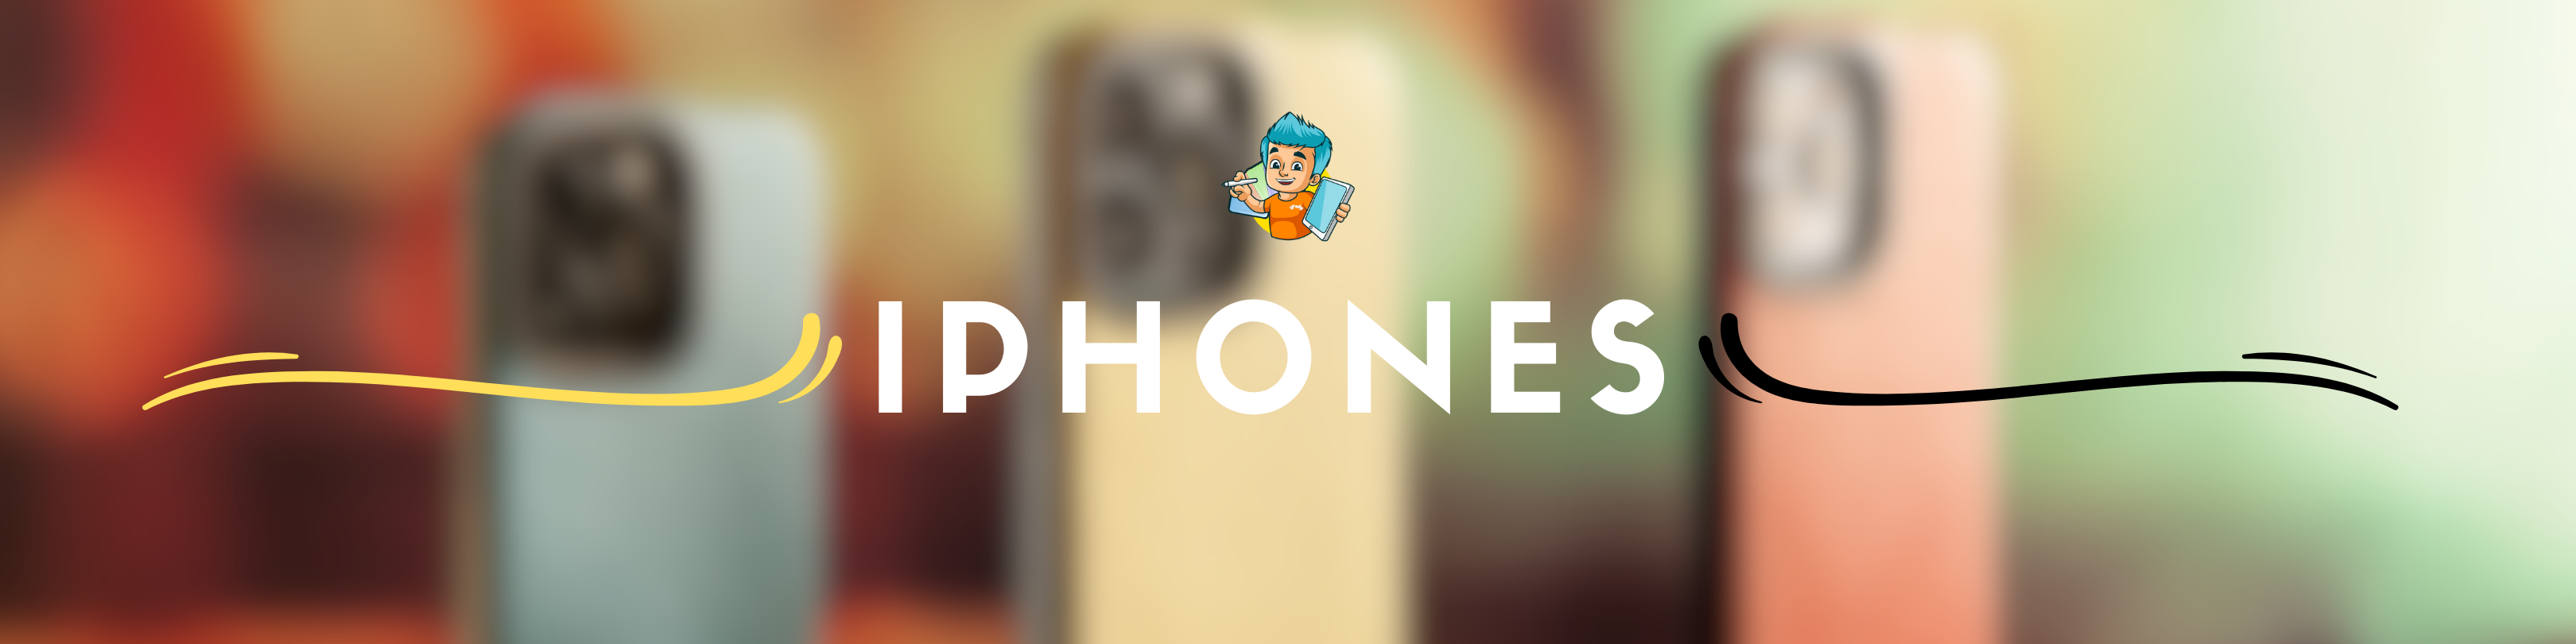 Phones | iPhones